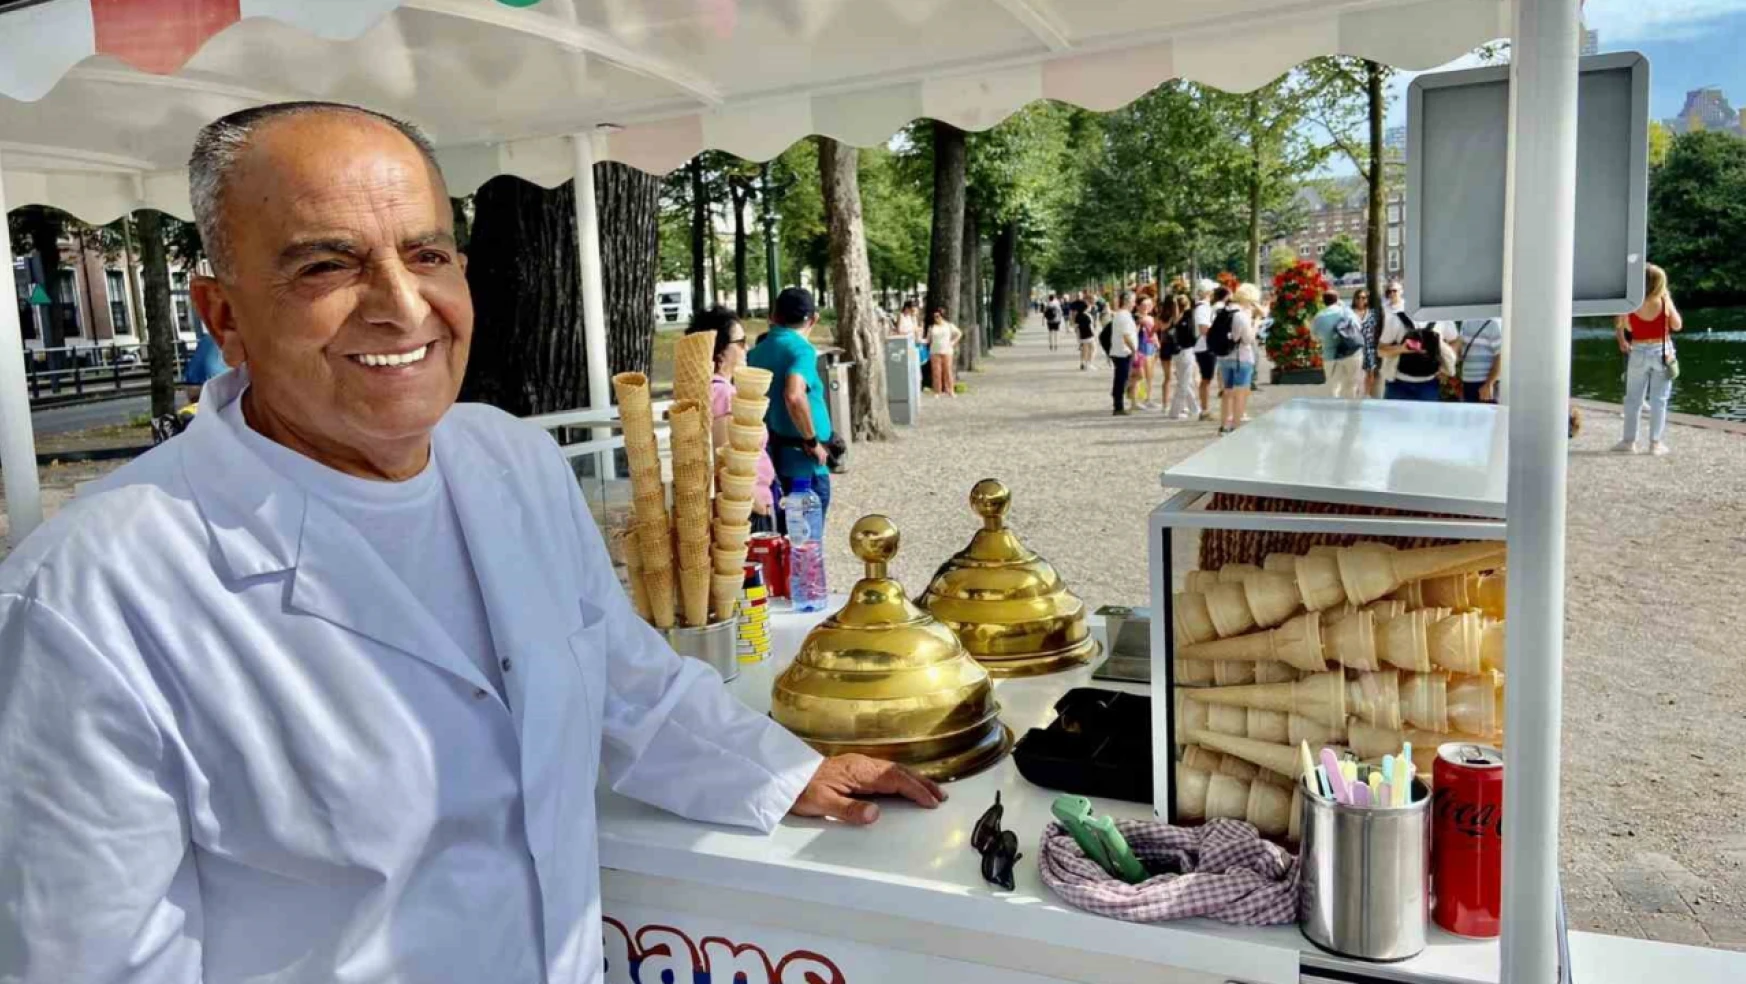 Hollanda'nın en ünlü dondurmacısı Musa Pekdemir 67 yaşında hayatını kaybetti